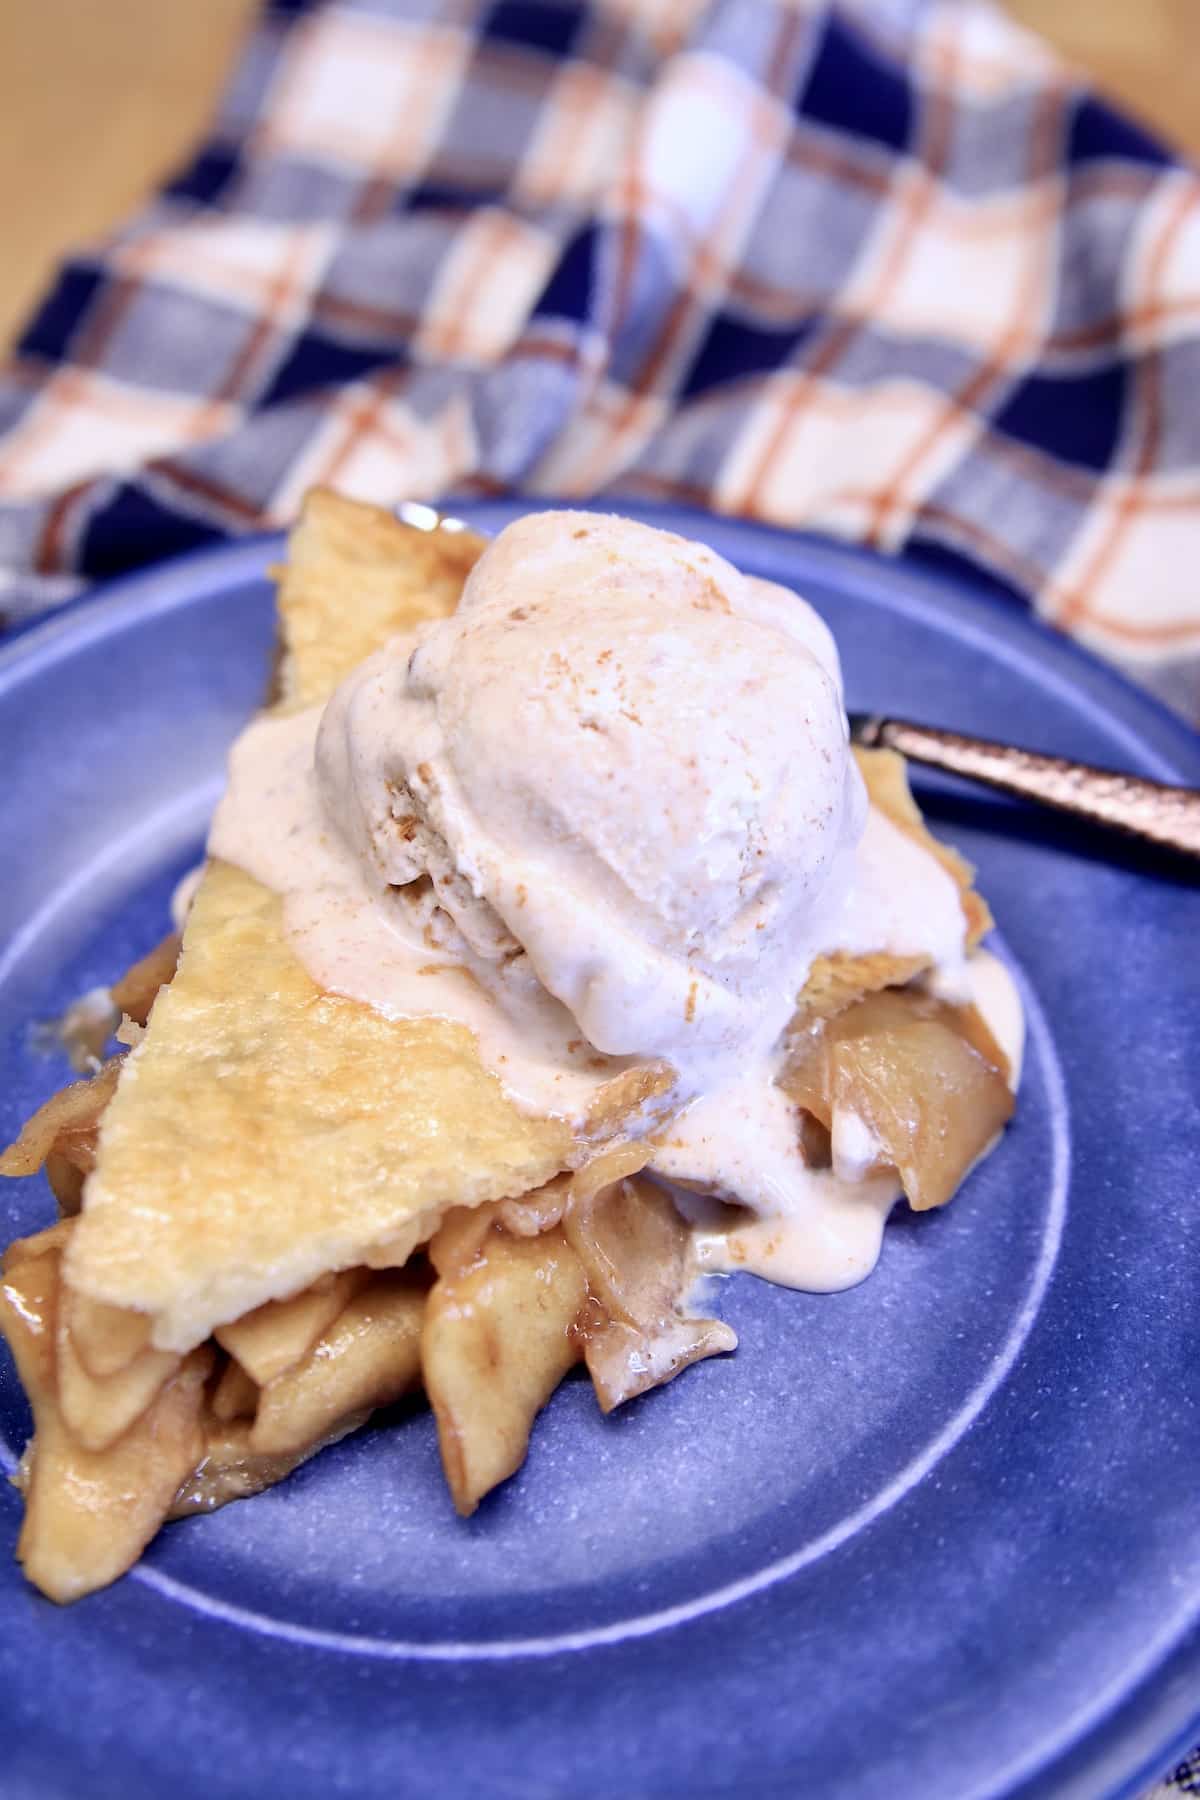 Apple pie slice with scoop of cinnamon ice cream.